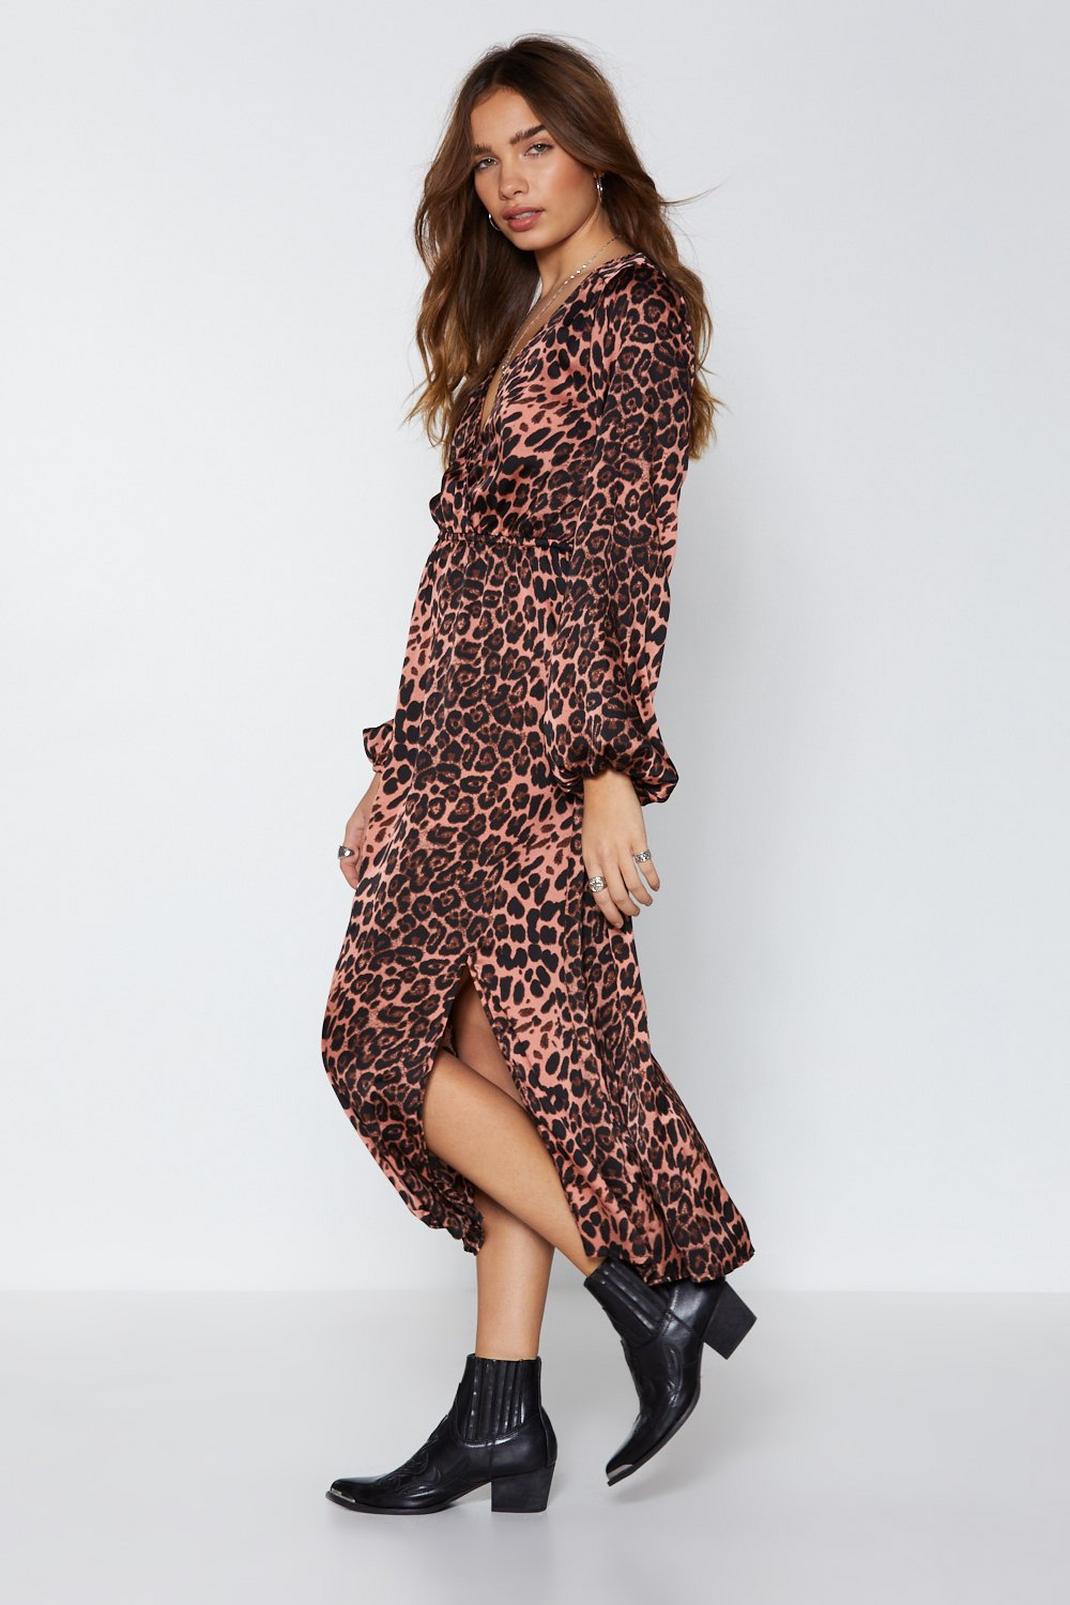 Oh Hey Grr-l Leopard Dress image number 1